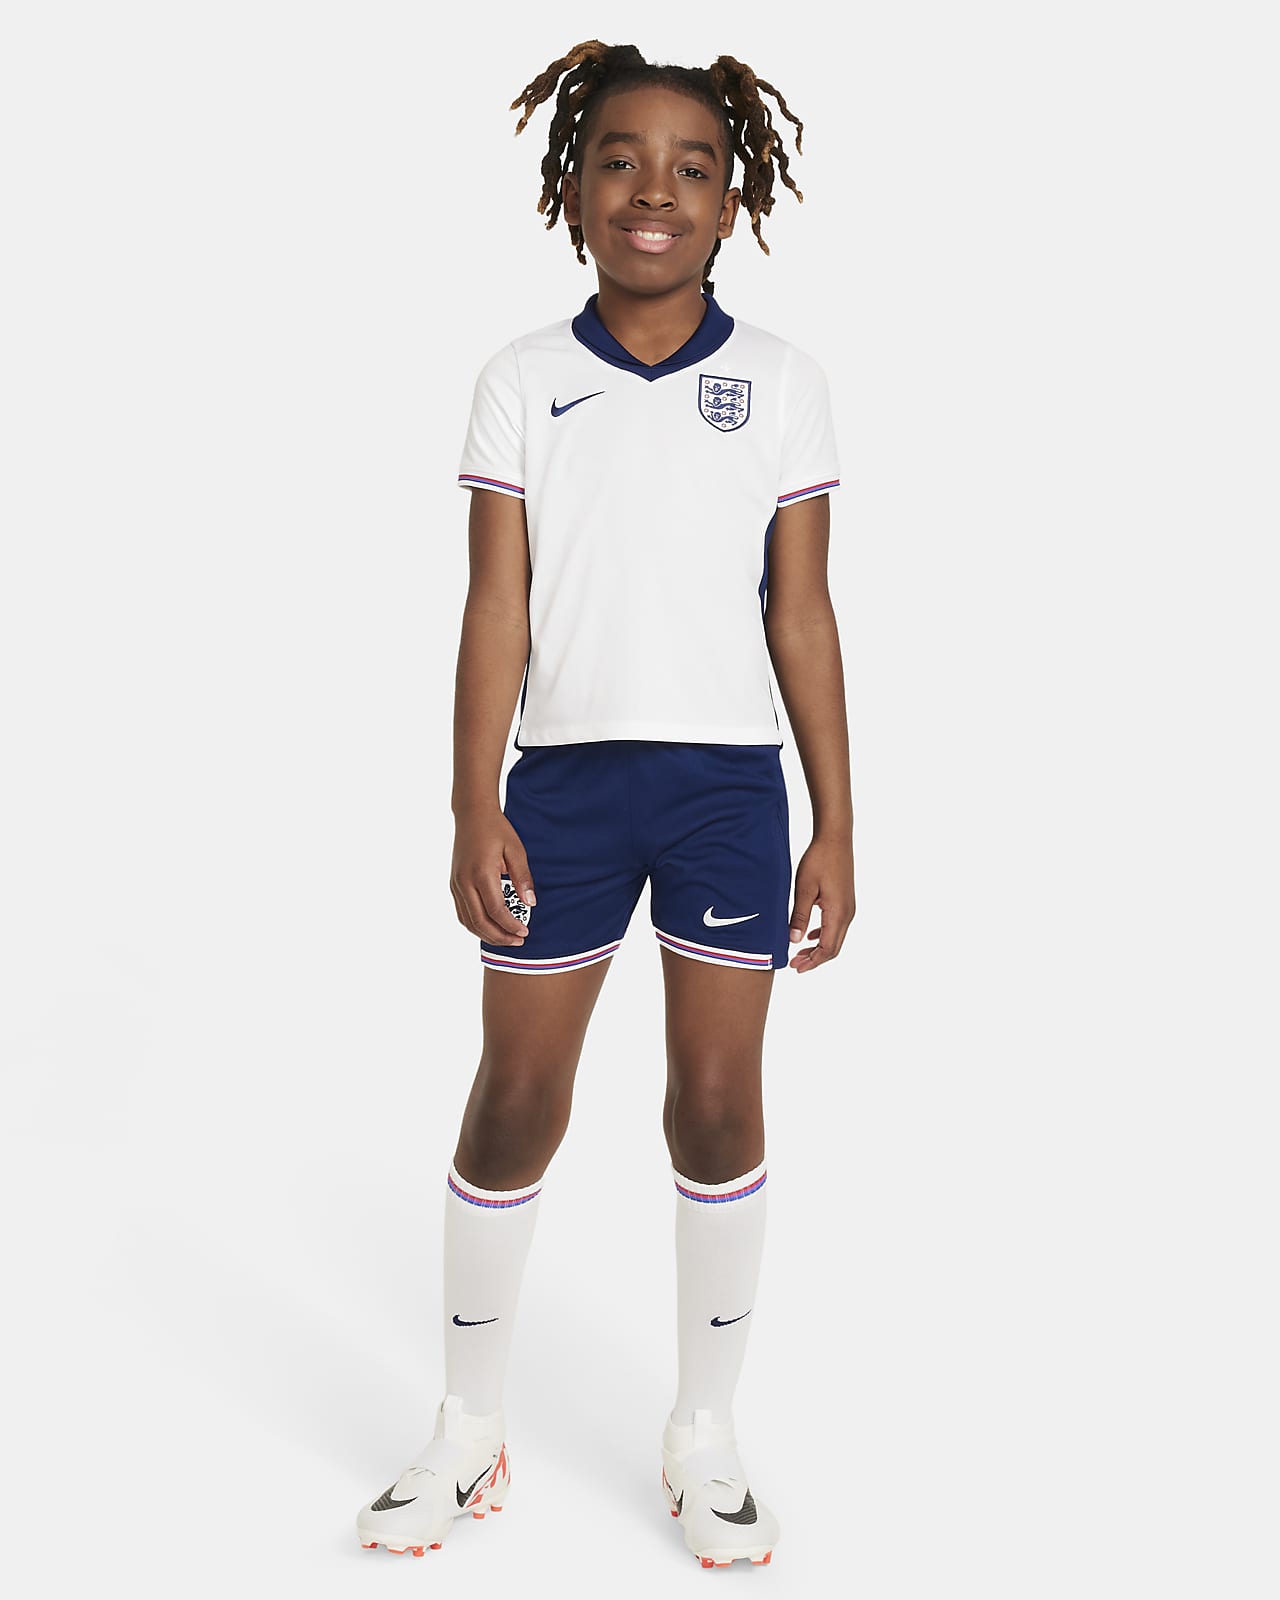 2024 赛季英格兰队主场球迷版 Nike 幼童足球球衣、短裤和足球袜套装